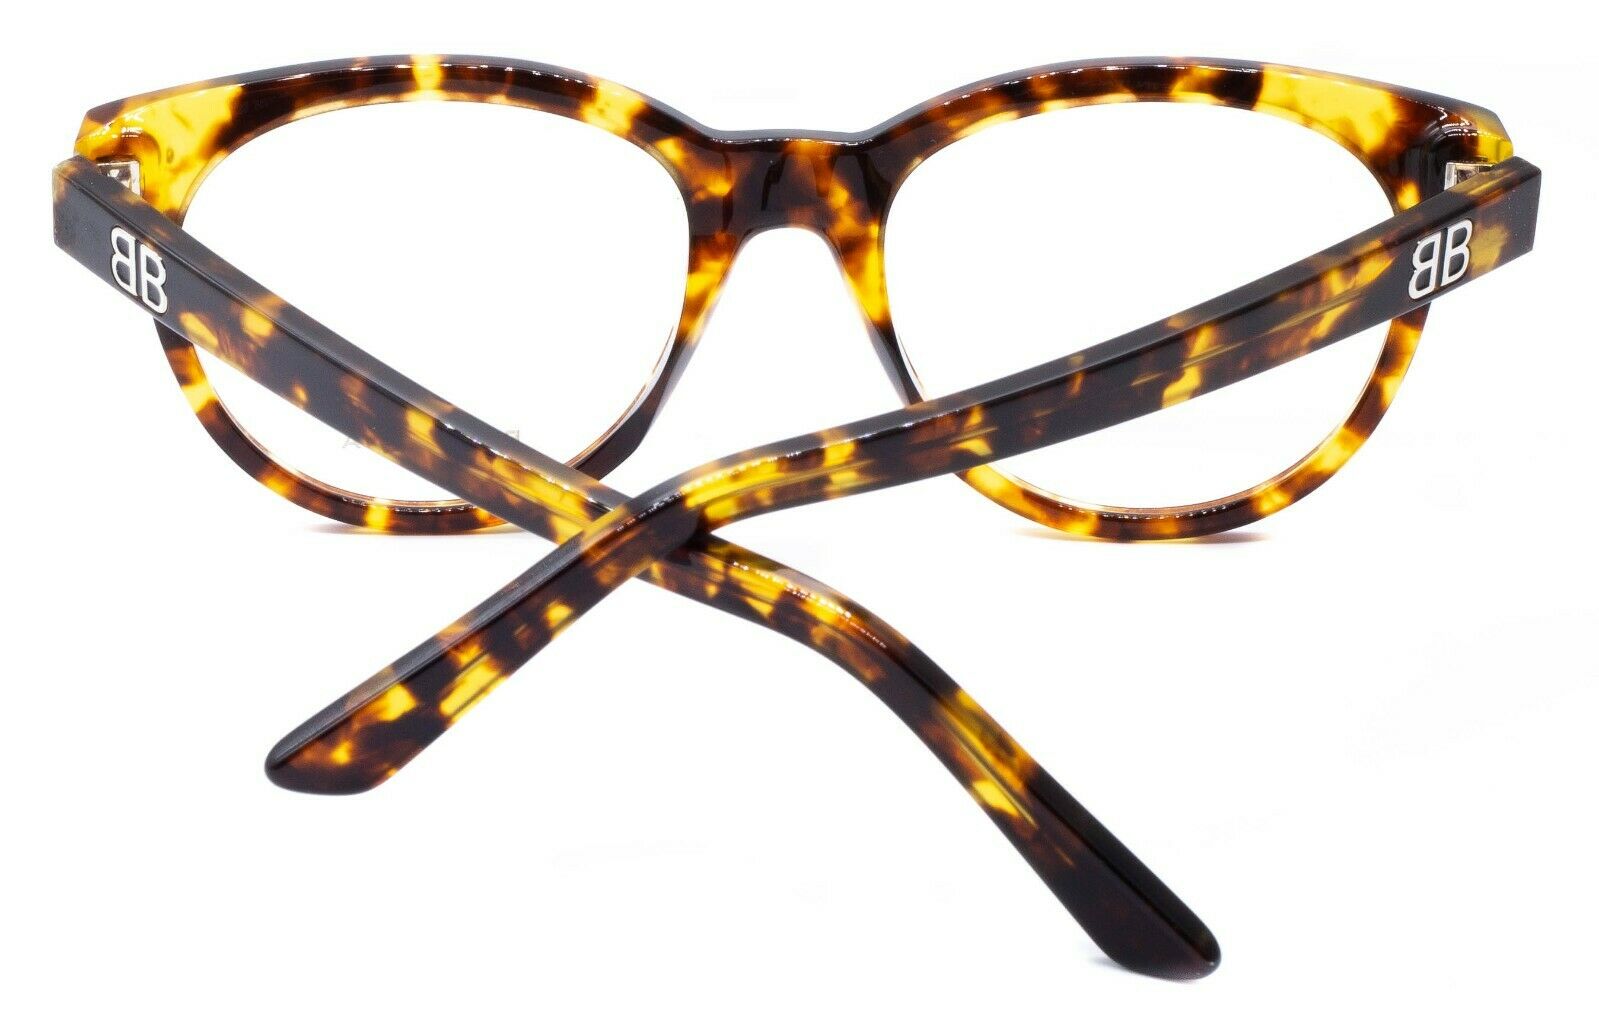 BALENCIAGA BA 5088 052 52mm Eyewear FRAMES RX Optical Eyeglasses New BNIB Italy